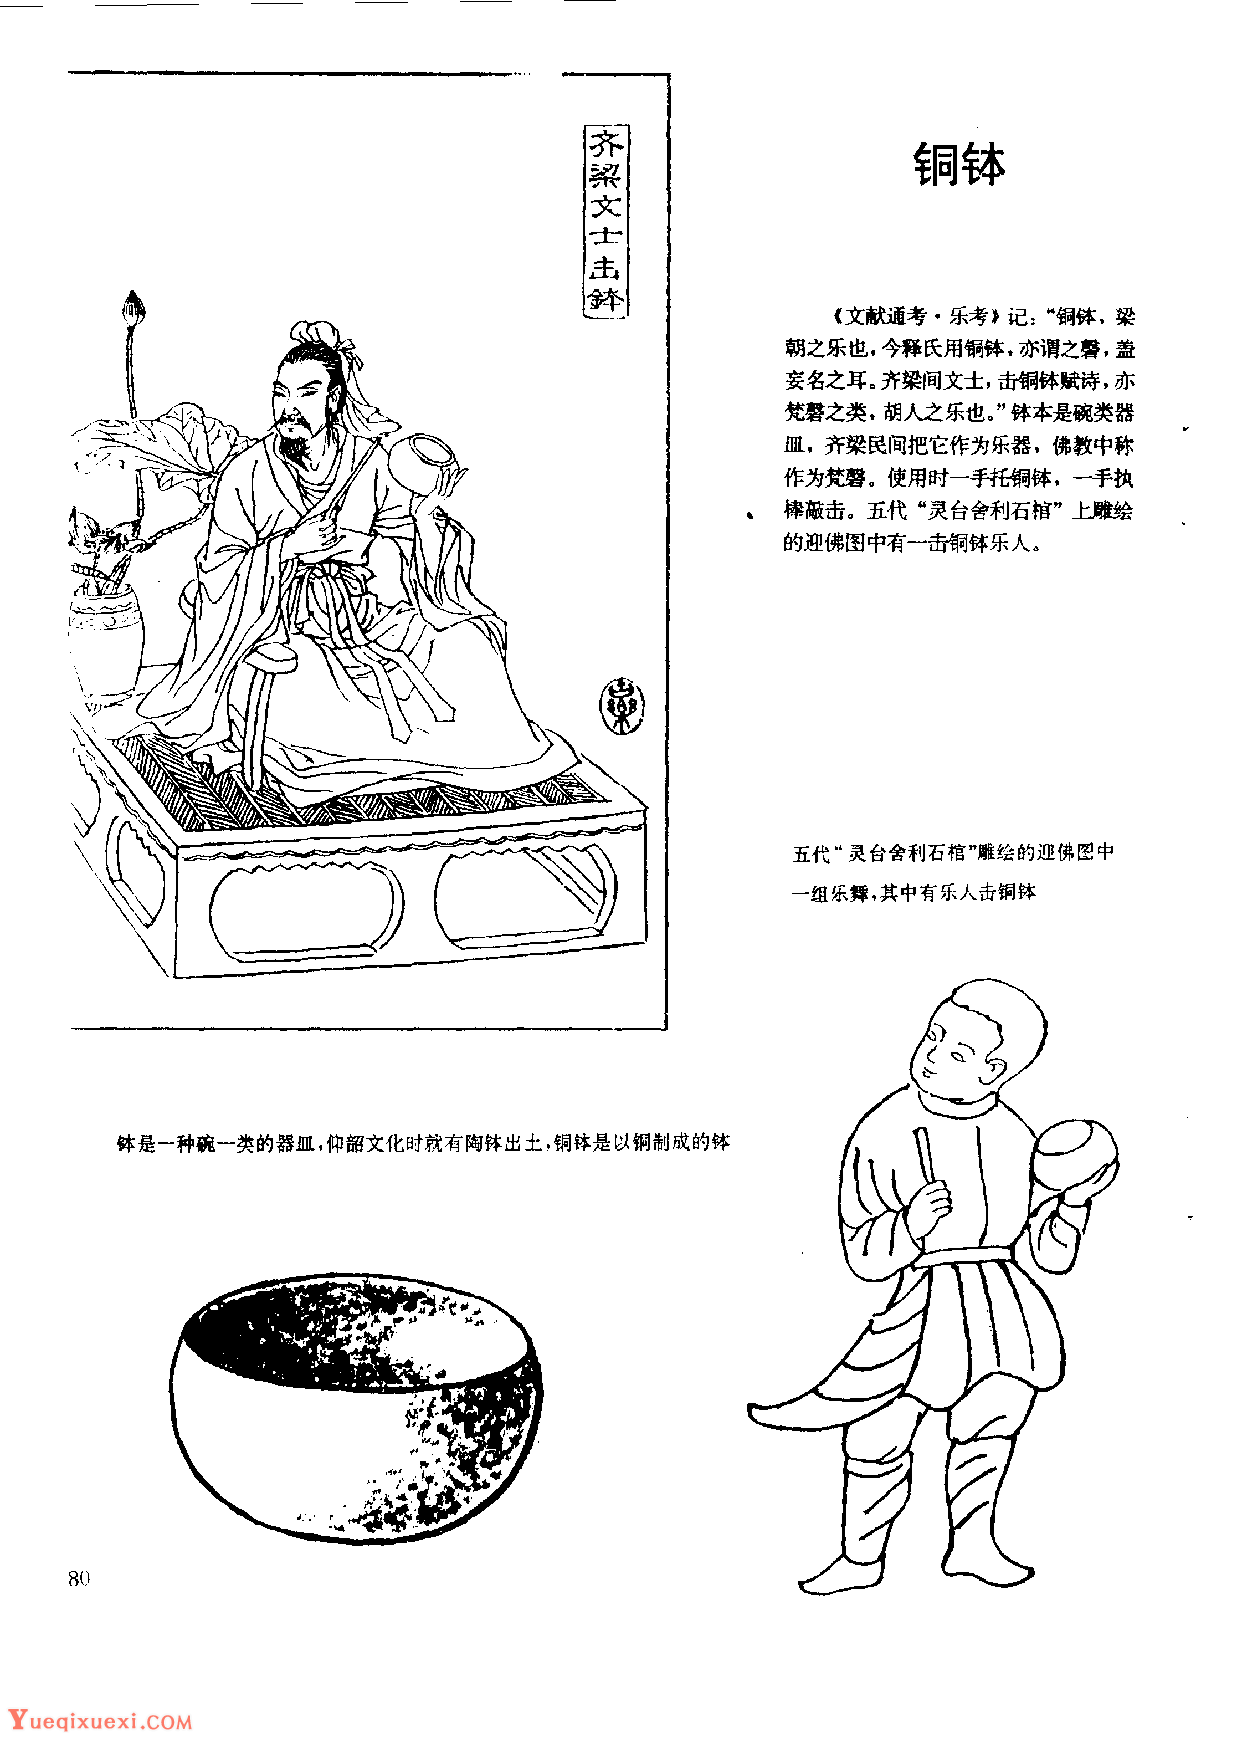 中国古代乐器《铜钵》